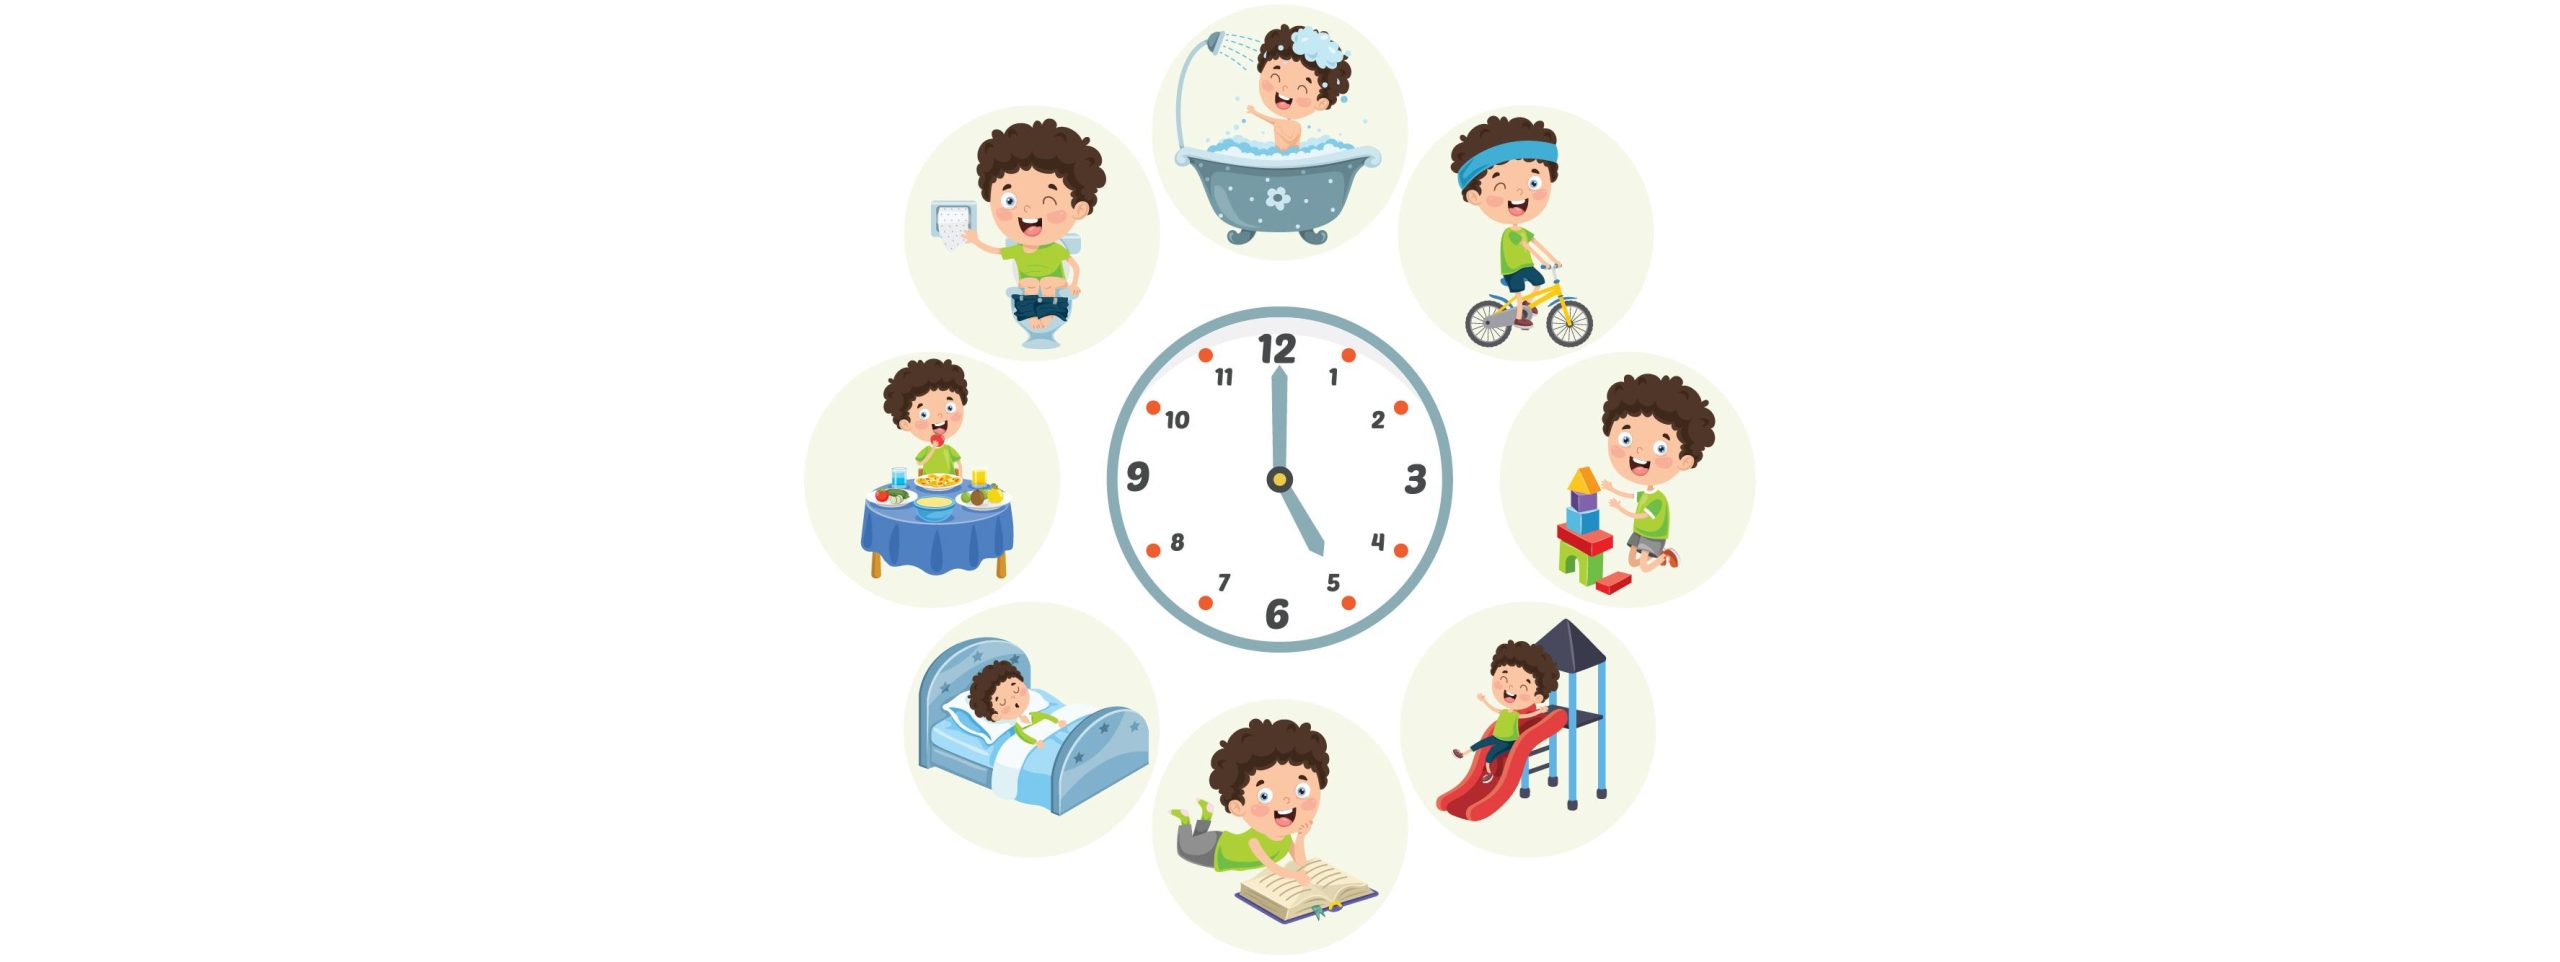 Sleep habits and Tips to Help your Kid get a Good Sleep